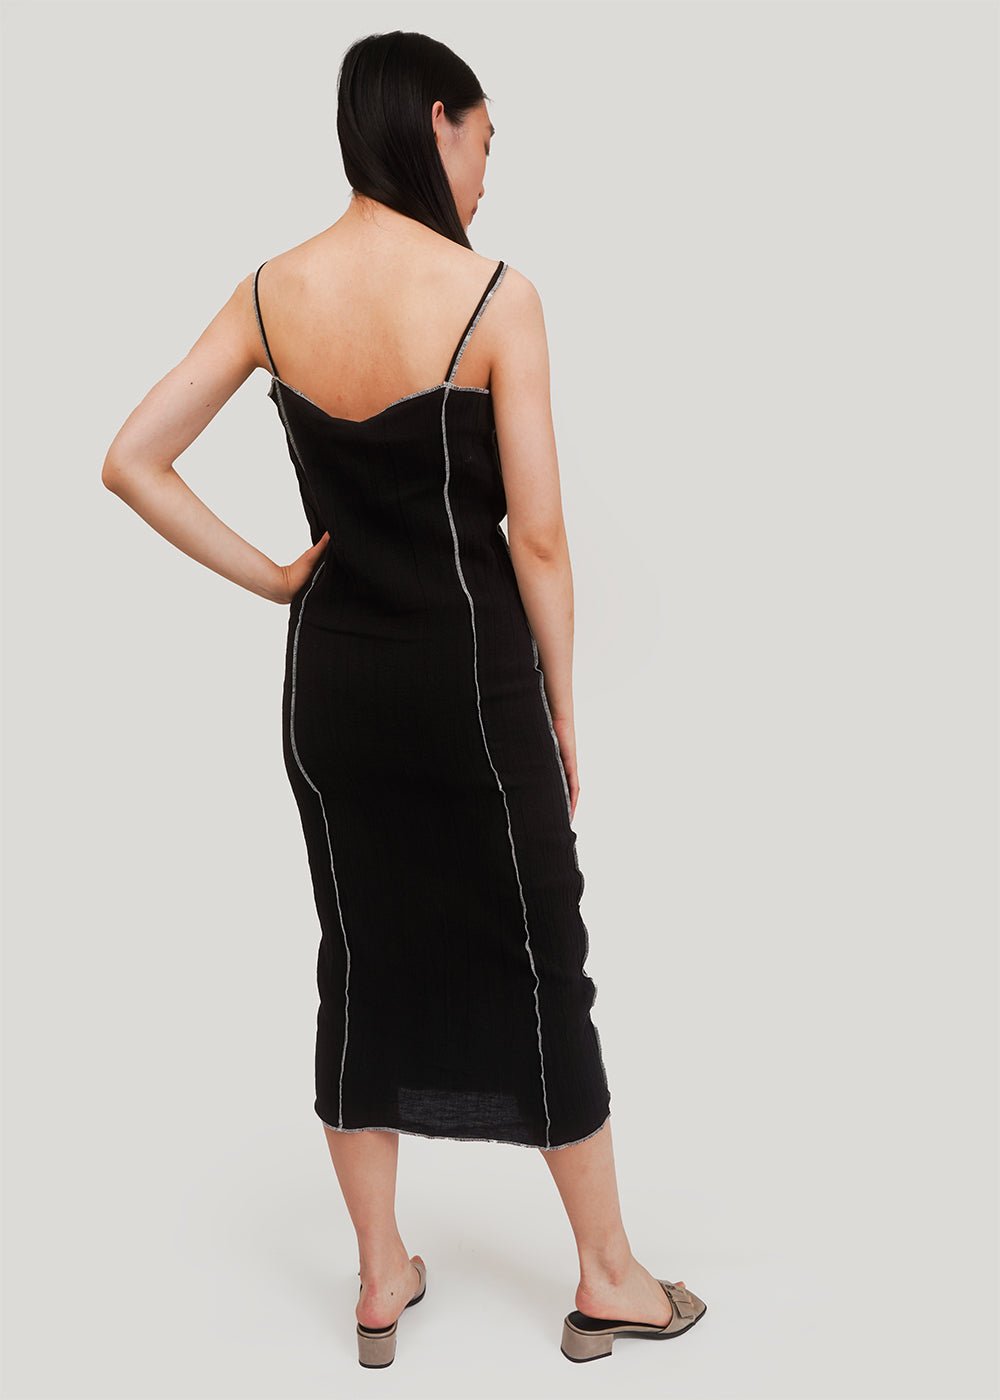 Shok Slip Dress in Black by BASERANGE – New Classics Studios